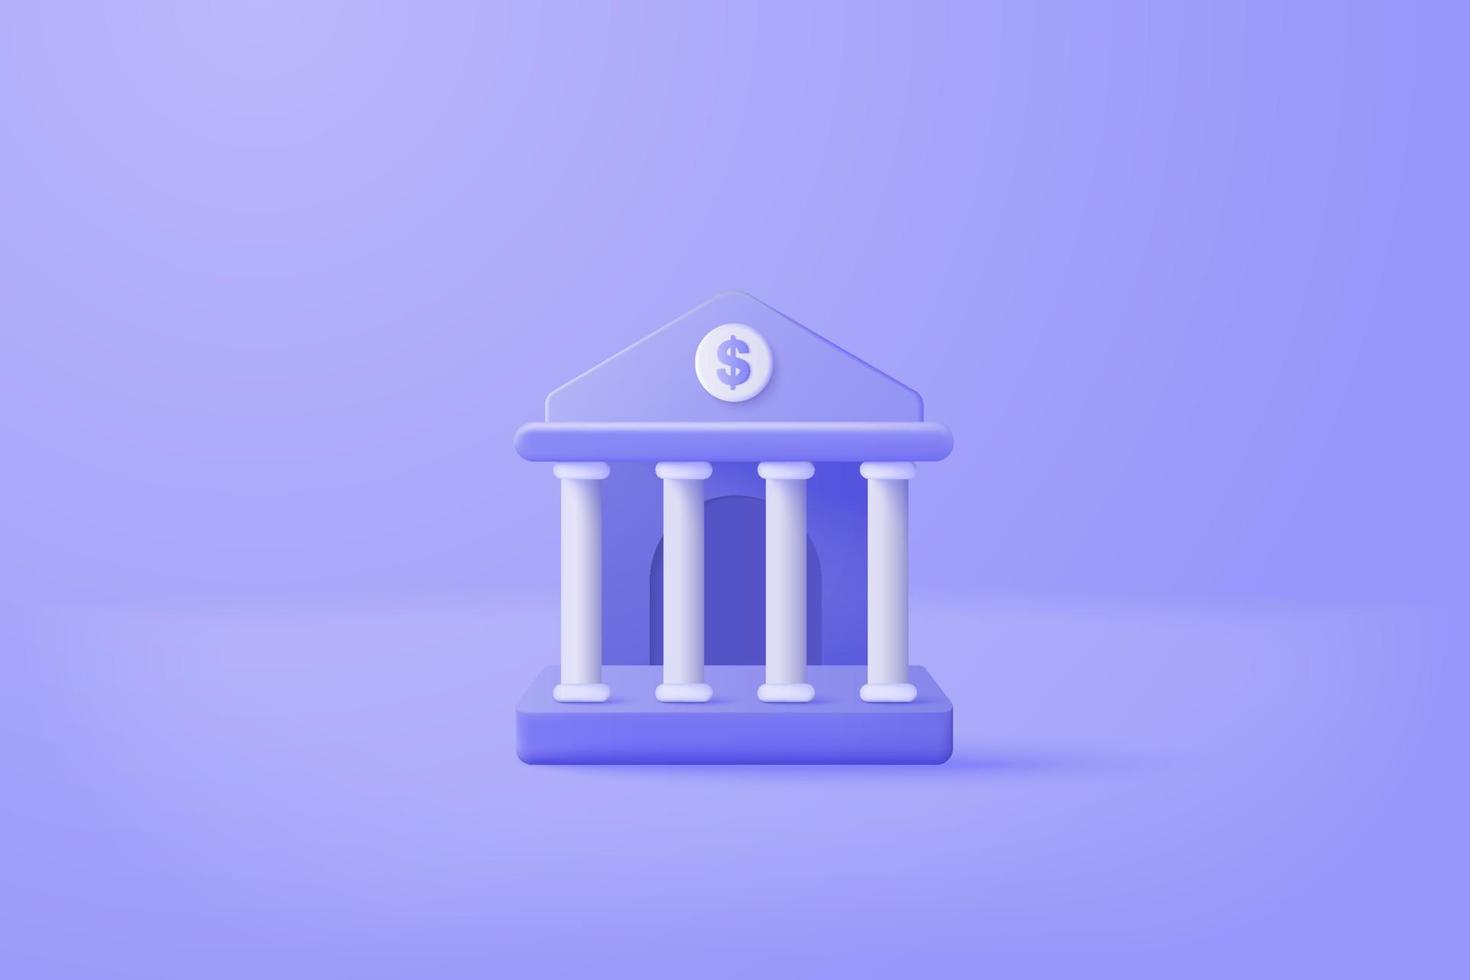 3D minimale bankstorting en opname, transactieservice van geld, financieel bankconcept. bankgebouw met cartoon pictogramstijl op de achtergrond. 3D bank vector render op geïsoleerde blauwe achtergrond